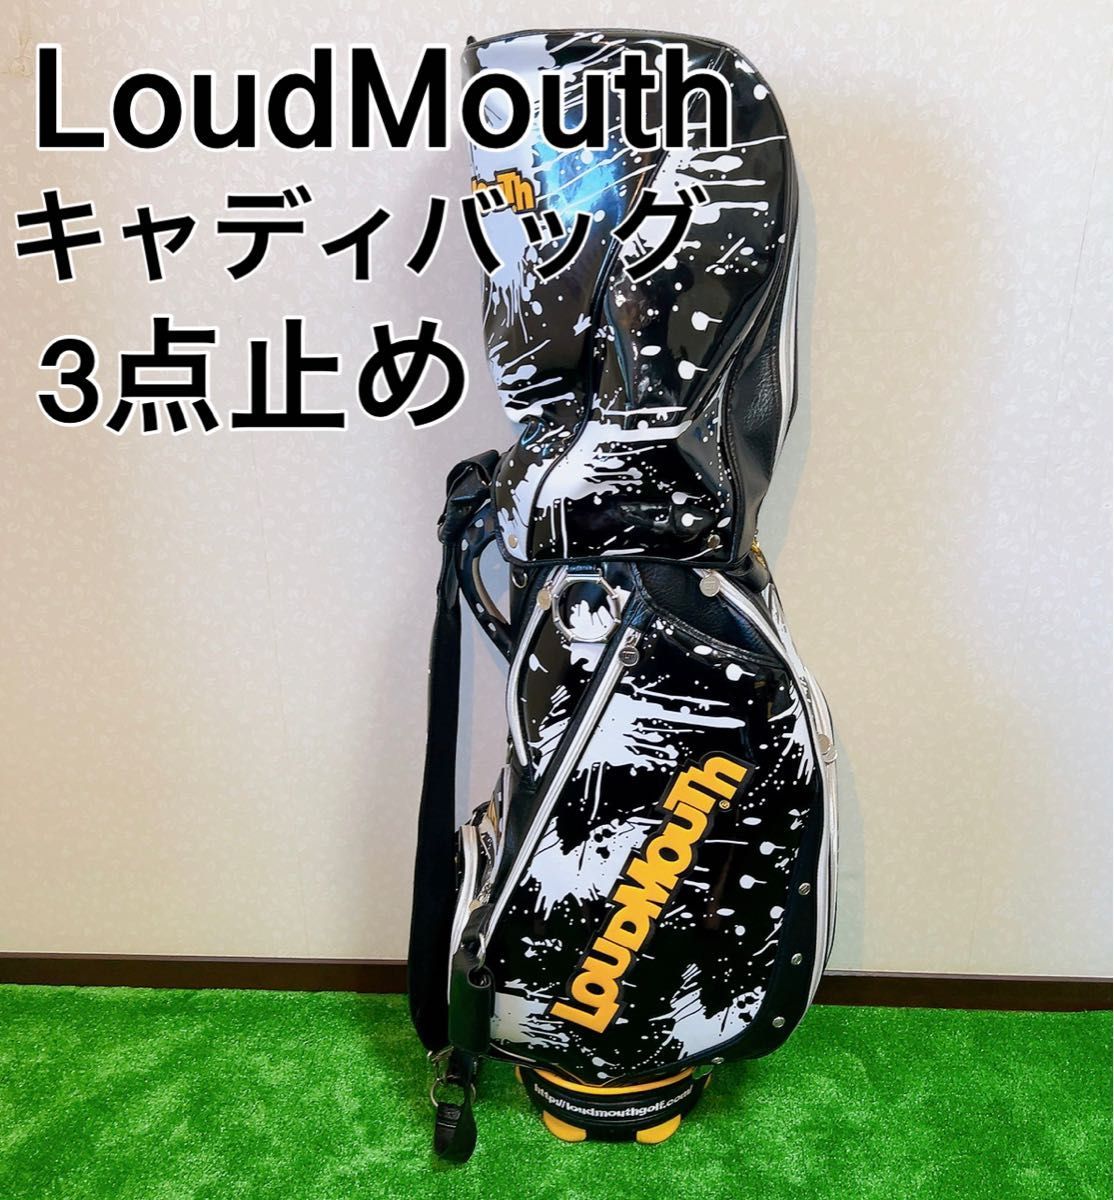 2022年レディースファッション福袋特集 ラウドマウス LoudMouth